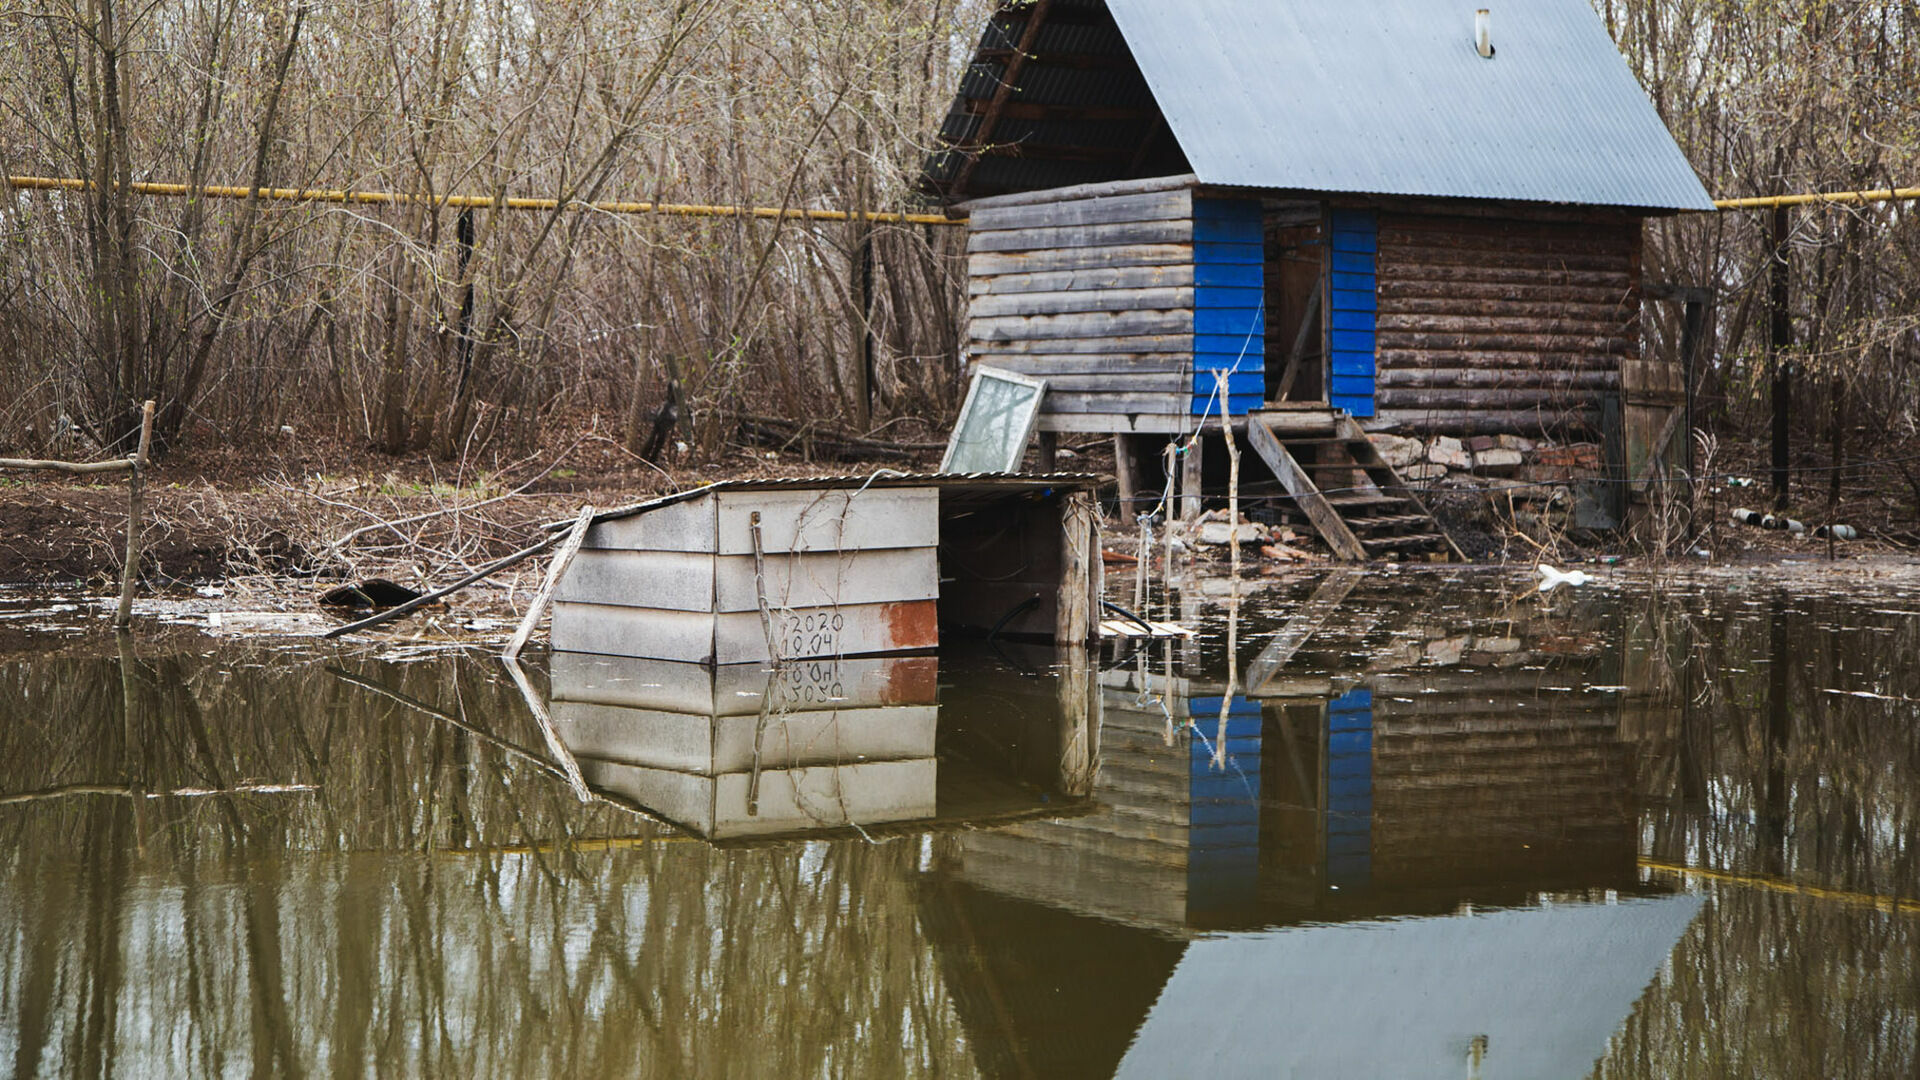 ГОЧС: Нижний Новгород подготовился защищать население от весеннего паводка